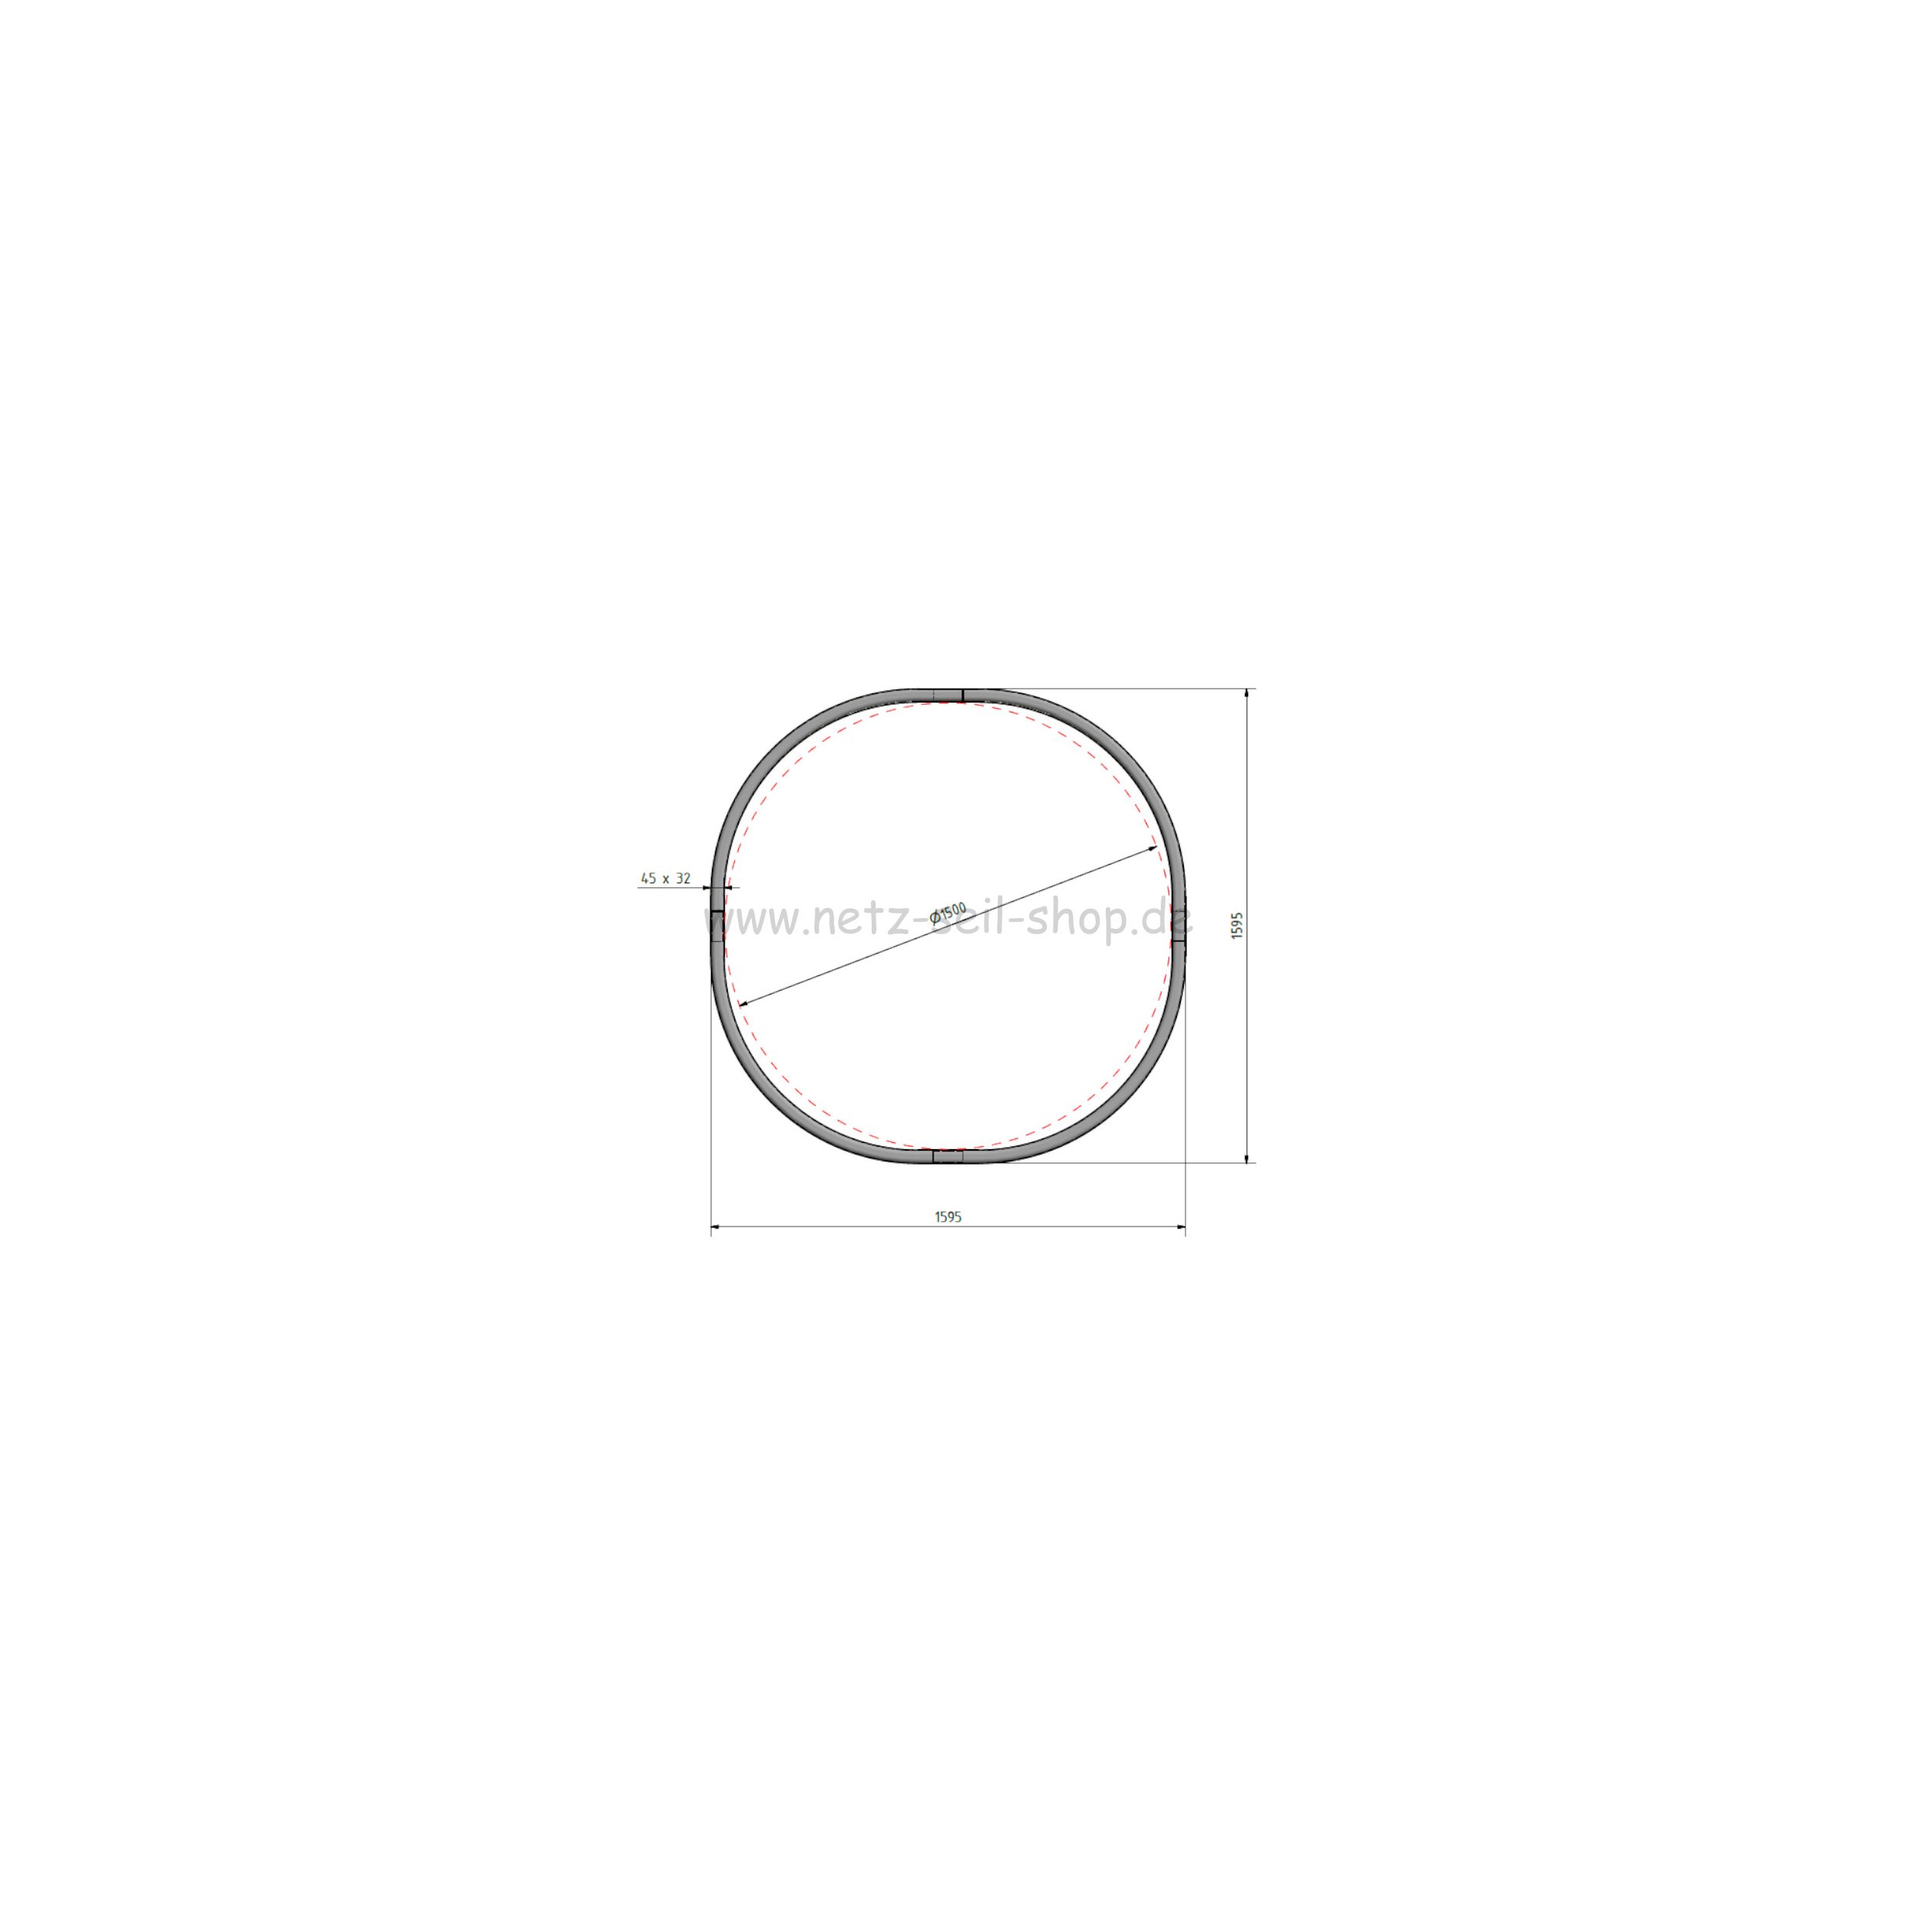 Heunetz für Rundballen, 160 cm Durchmesser, Höhe 120cm,  Ø 5 mm Garn, # 80 mm Maschenweite ohne Ring